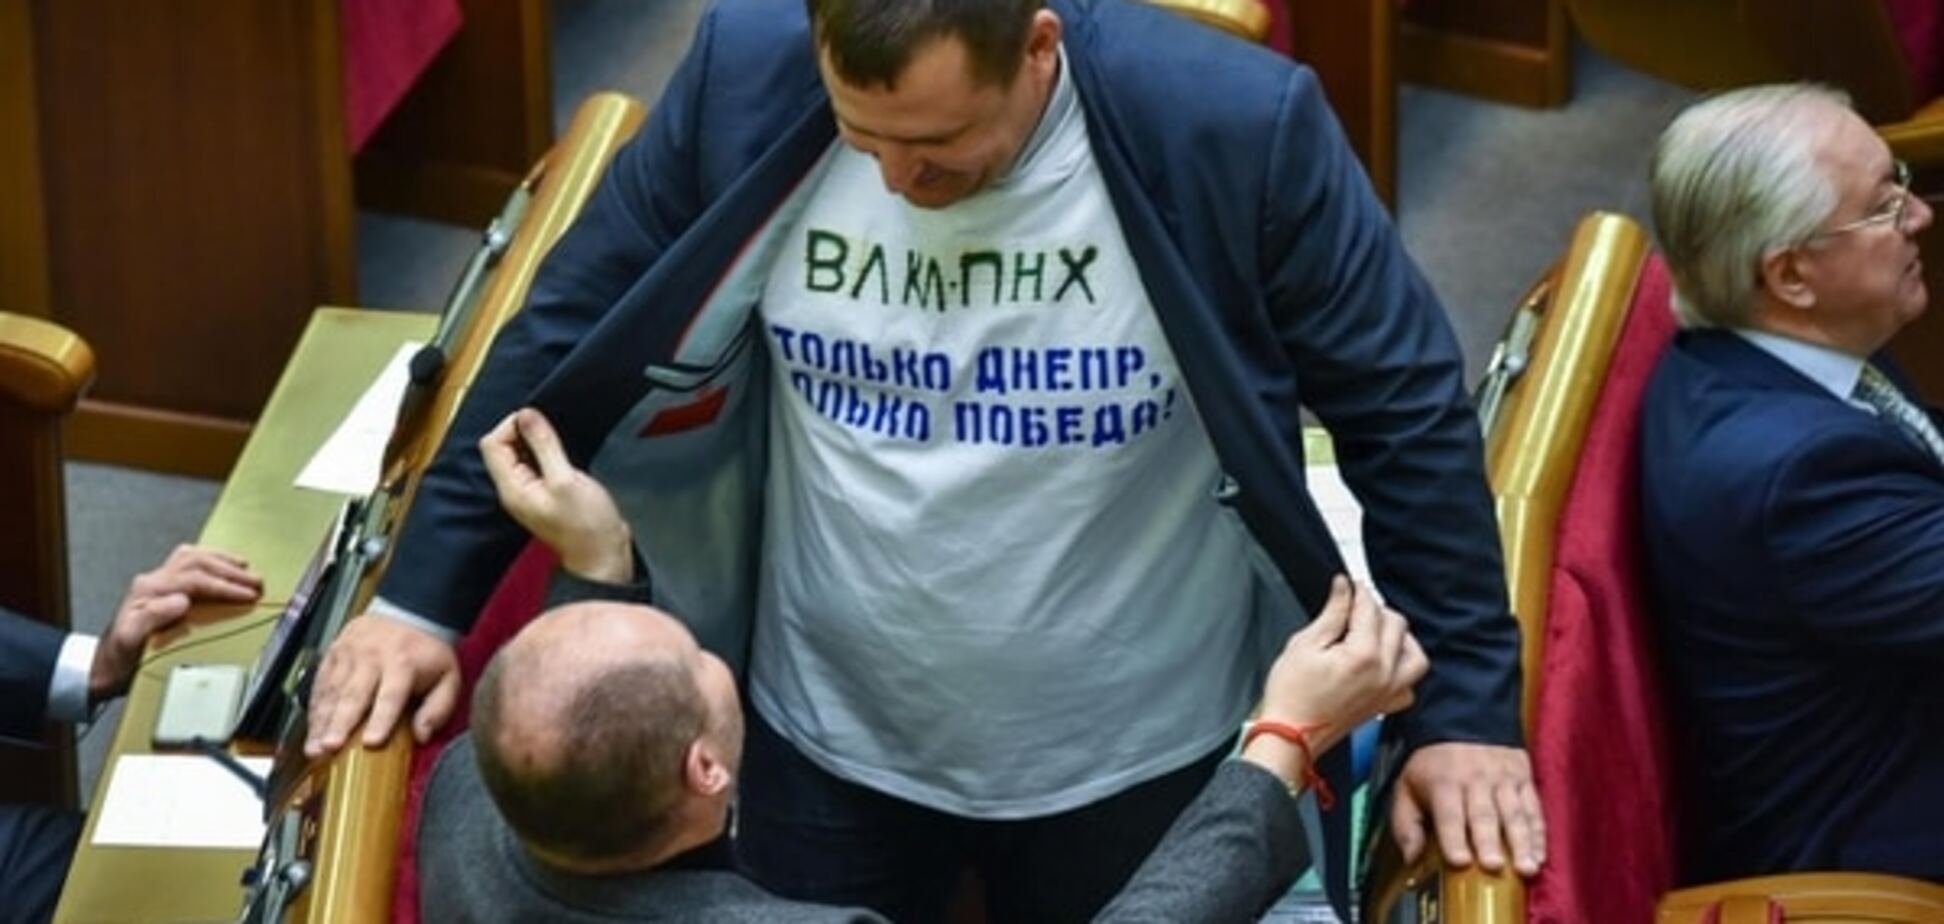 Філатов прийшов у Раду в футболці 'ВЛКЛ ПНХ': фотофакт